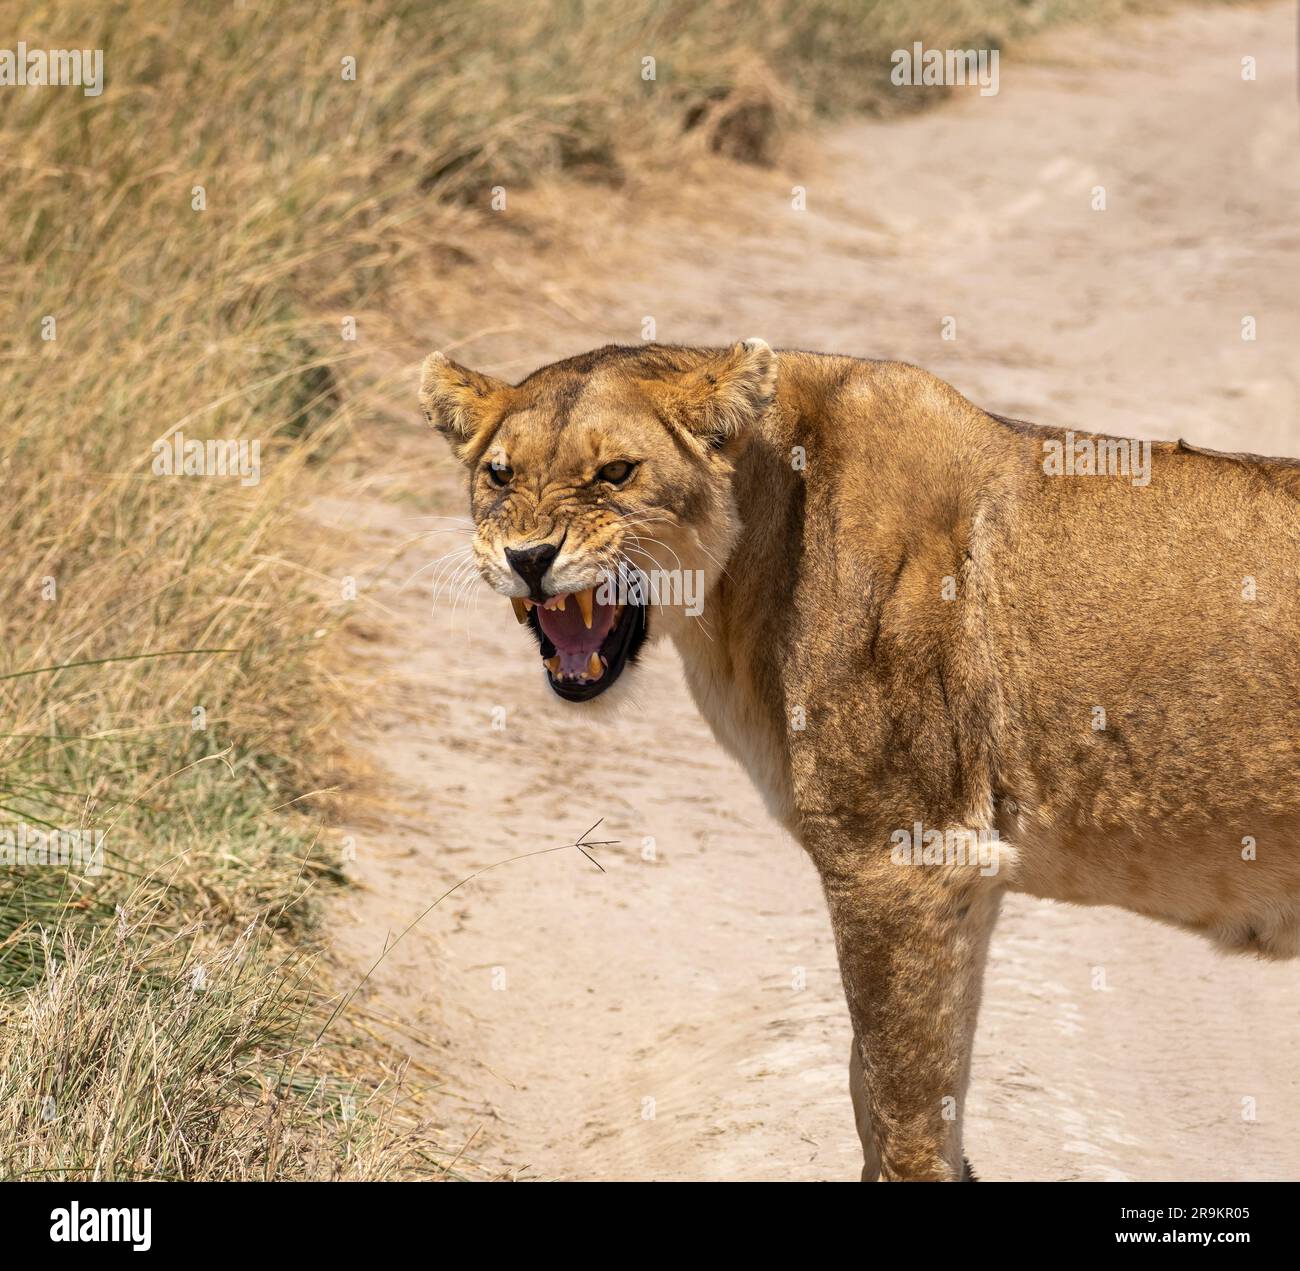 la leonessa ruggisce nel passato nel parco nazionale del serengeti, Tanzania. formato quadrato Foto Stock